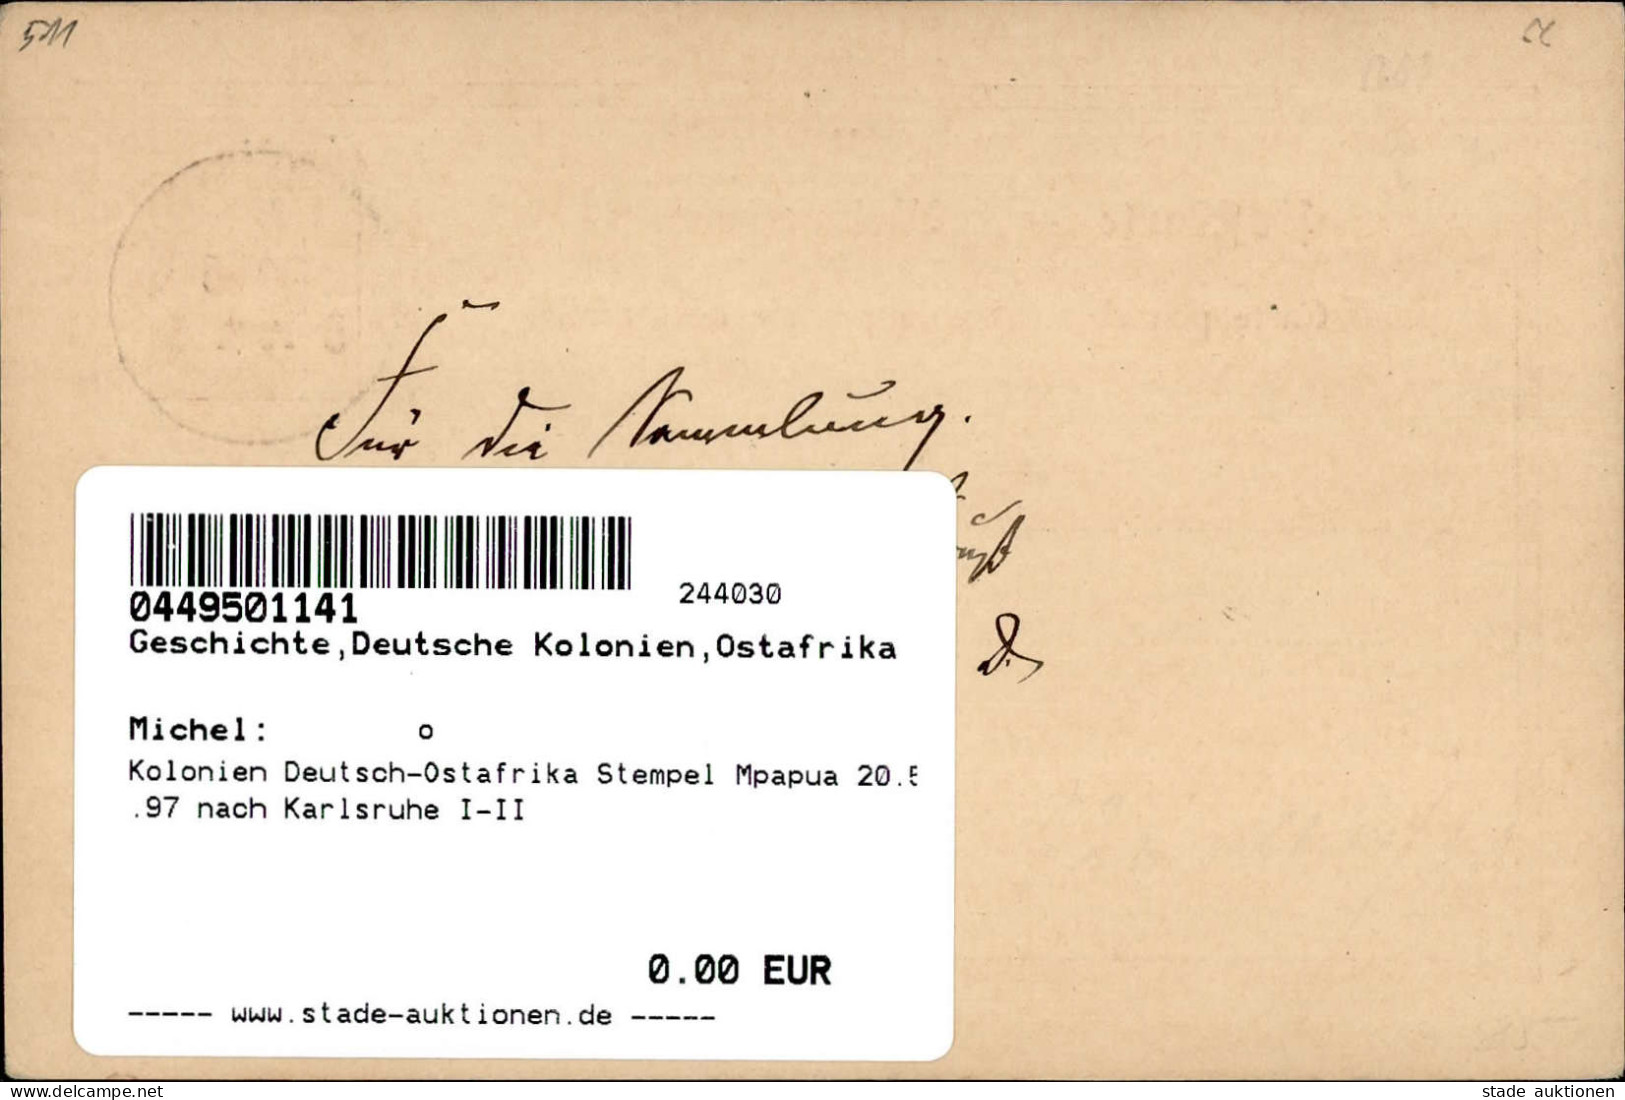 Kolonien Deutsch-Ostafrika Stempel Mpapua 20.5.97 Nach Karlsruhe I-II Colonies - Ehemalige Dt. Kolonien